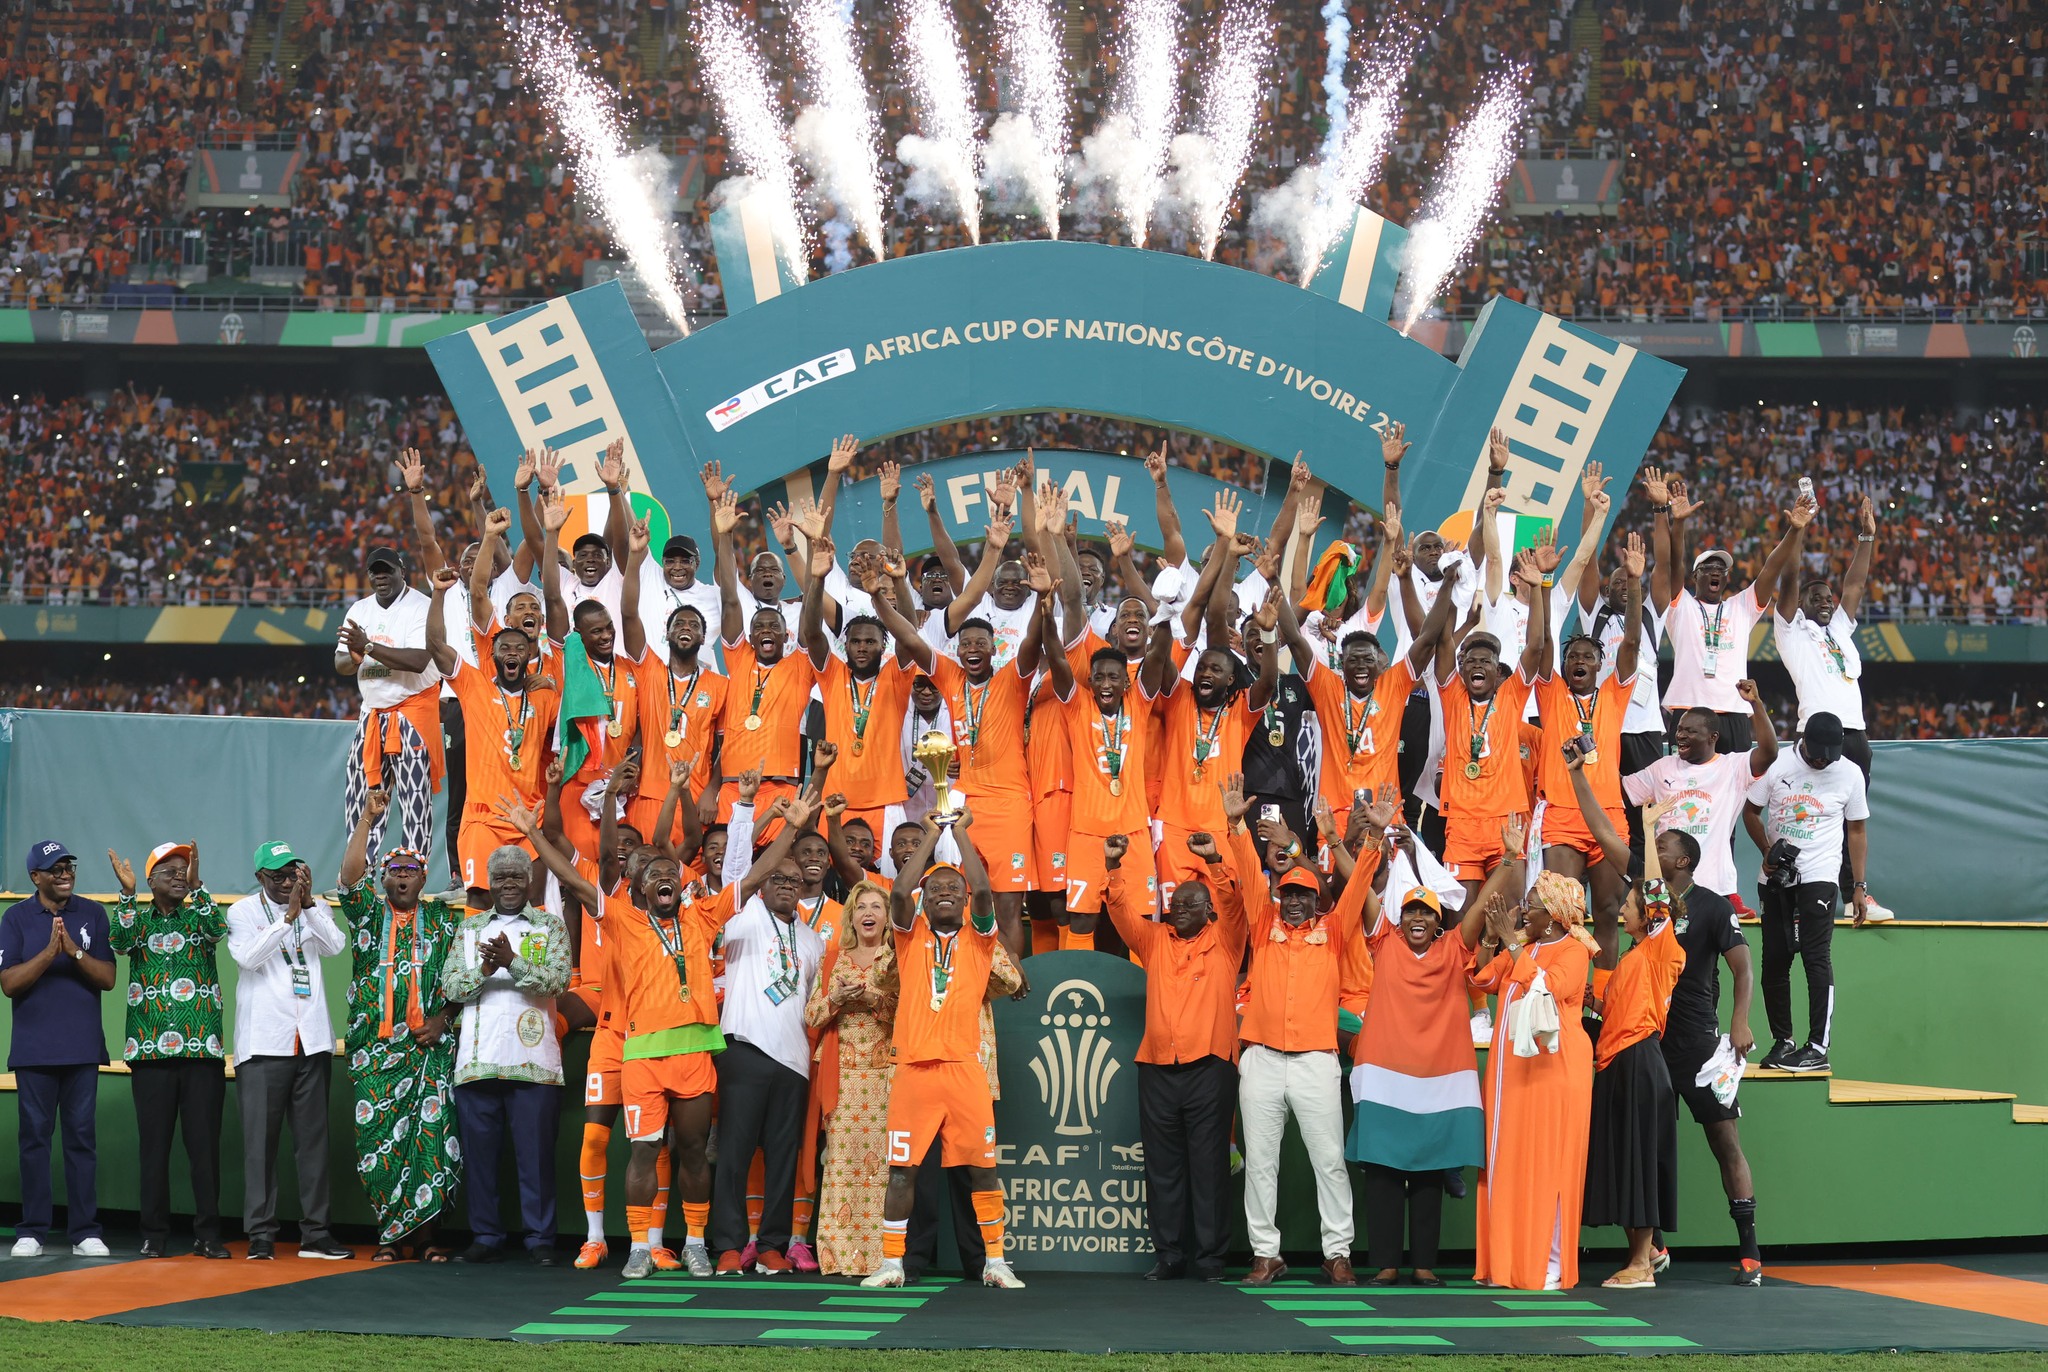 नाइजेरियालाई हराउँदै आइभेरी कोस्ट अफ्रिका कप अफ नेसन्सको च्याम्पियन 